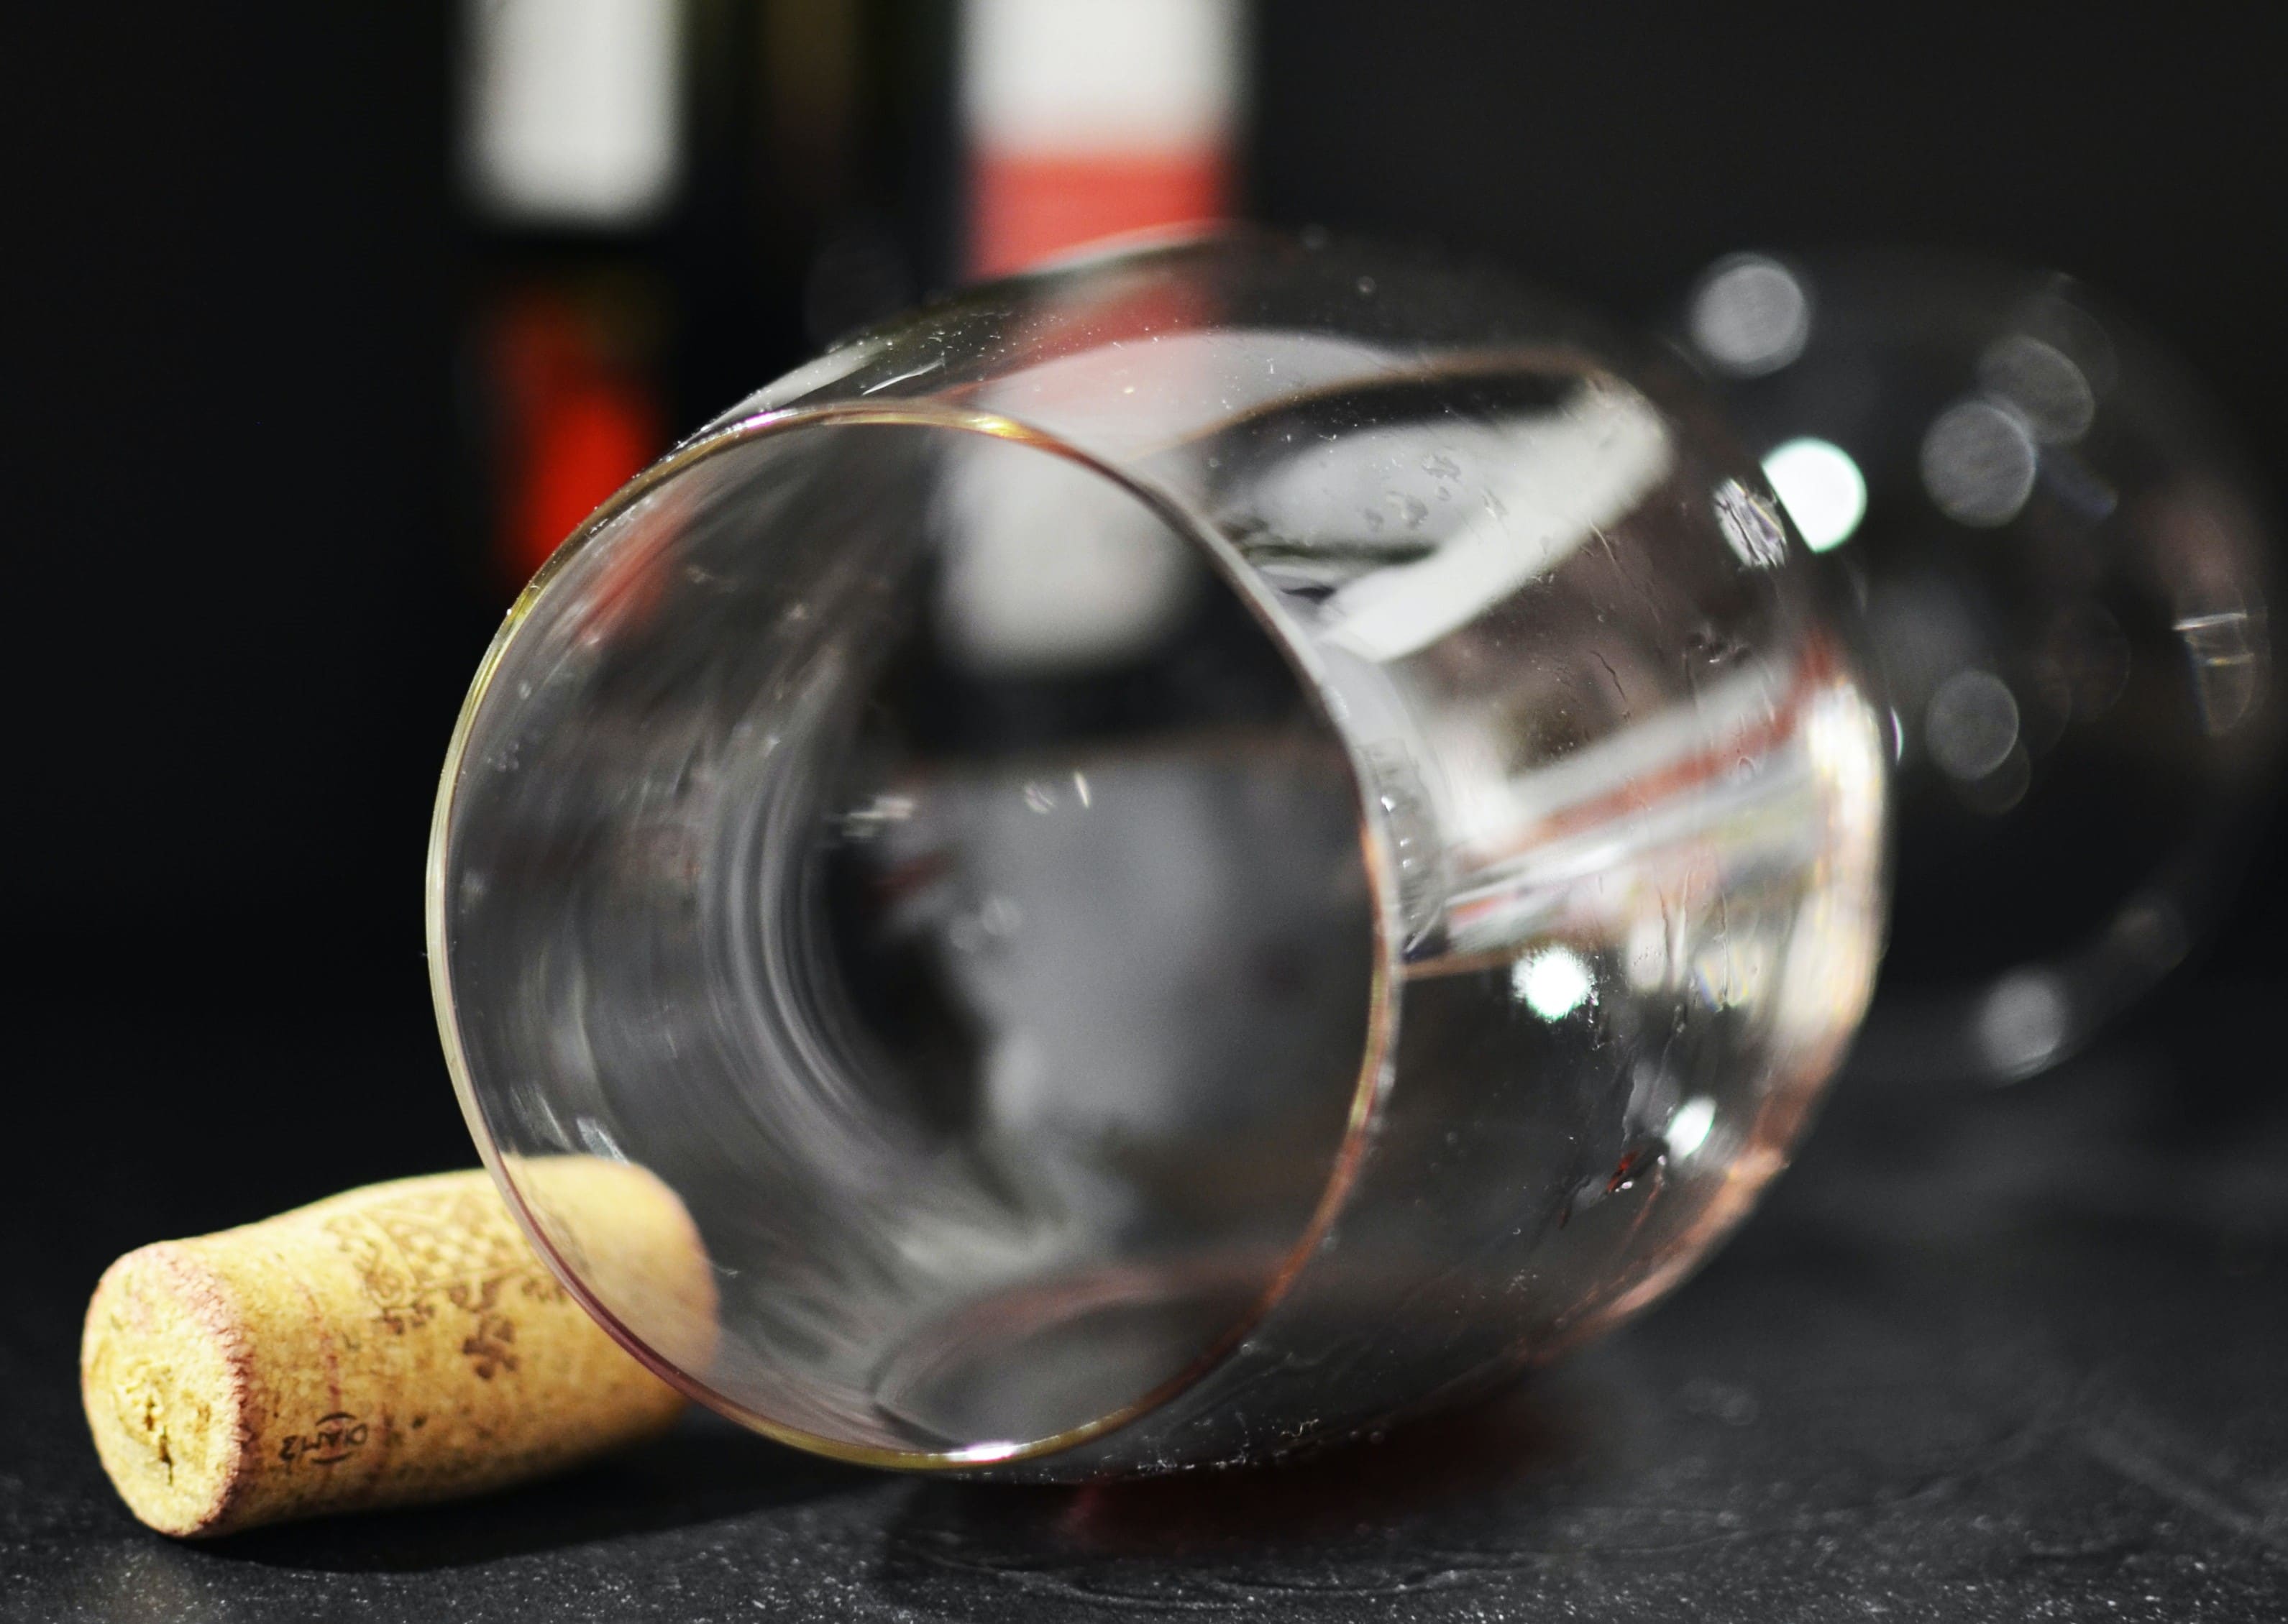 Veltet rødvinsglass med rester, med en vinkork henslengt på siden og en vinflaske i bakgrunnen. Skaper et inntrykk av en fuktig kveld som har kommet litt ut av kontroll.